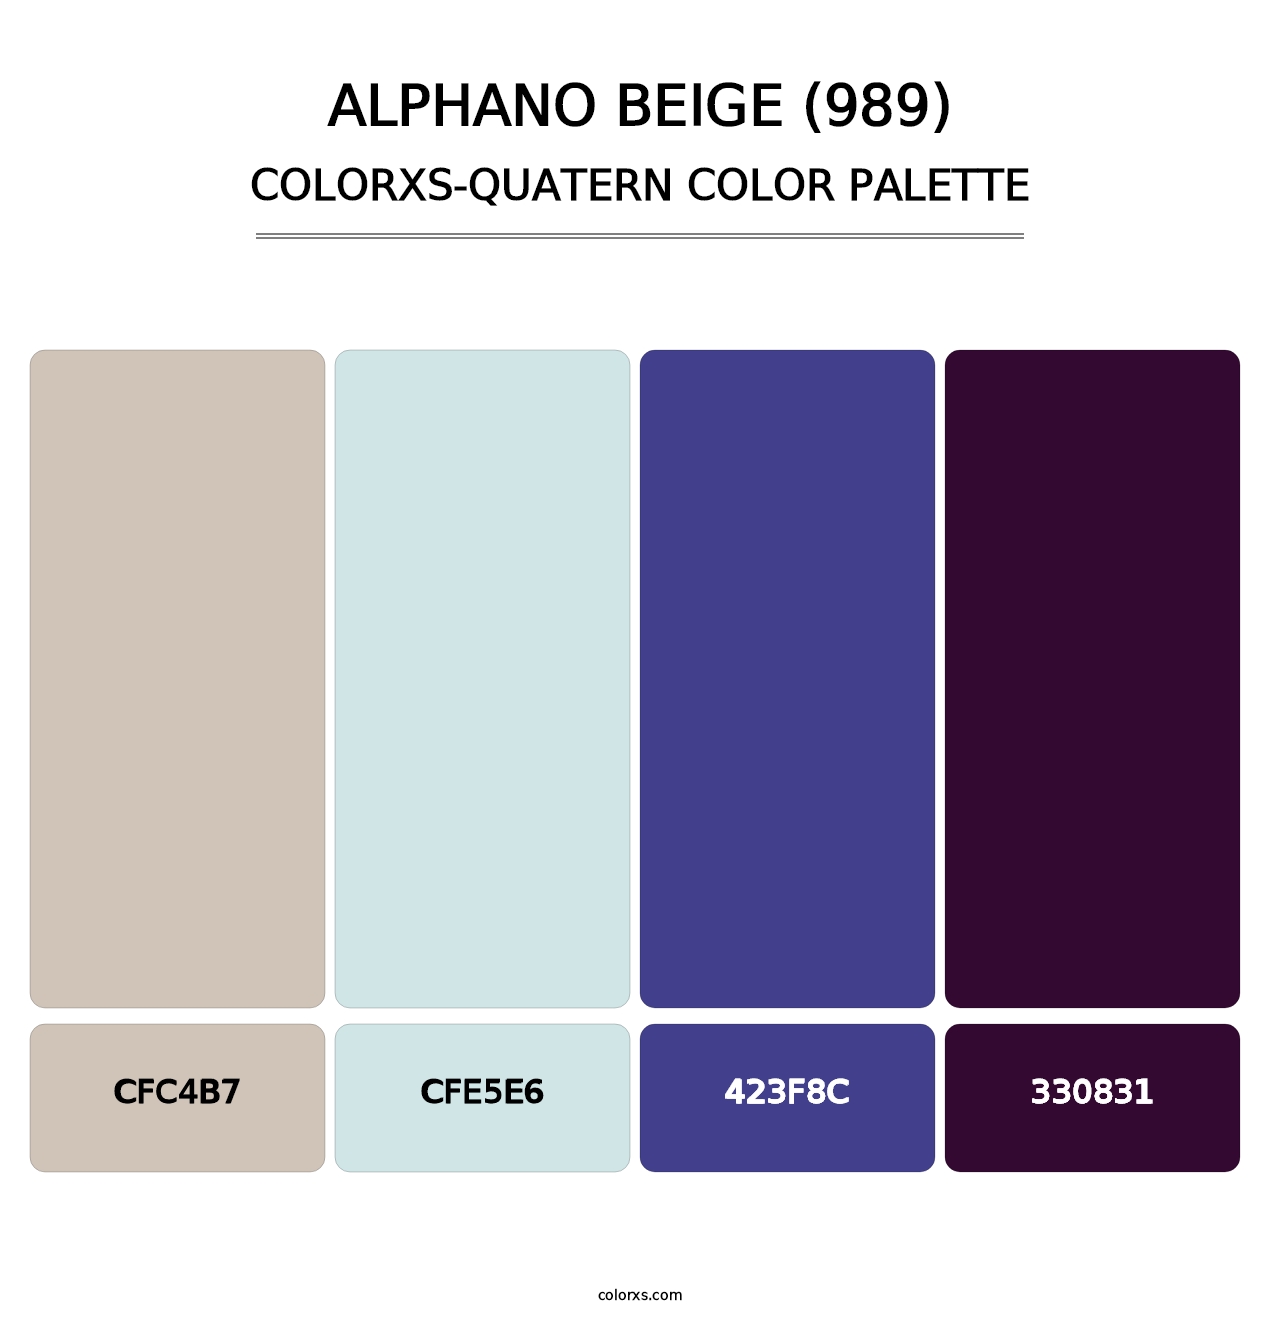 Alphano Beige (989) - Colorxs Quatern Palette